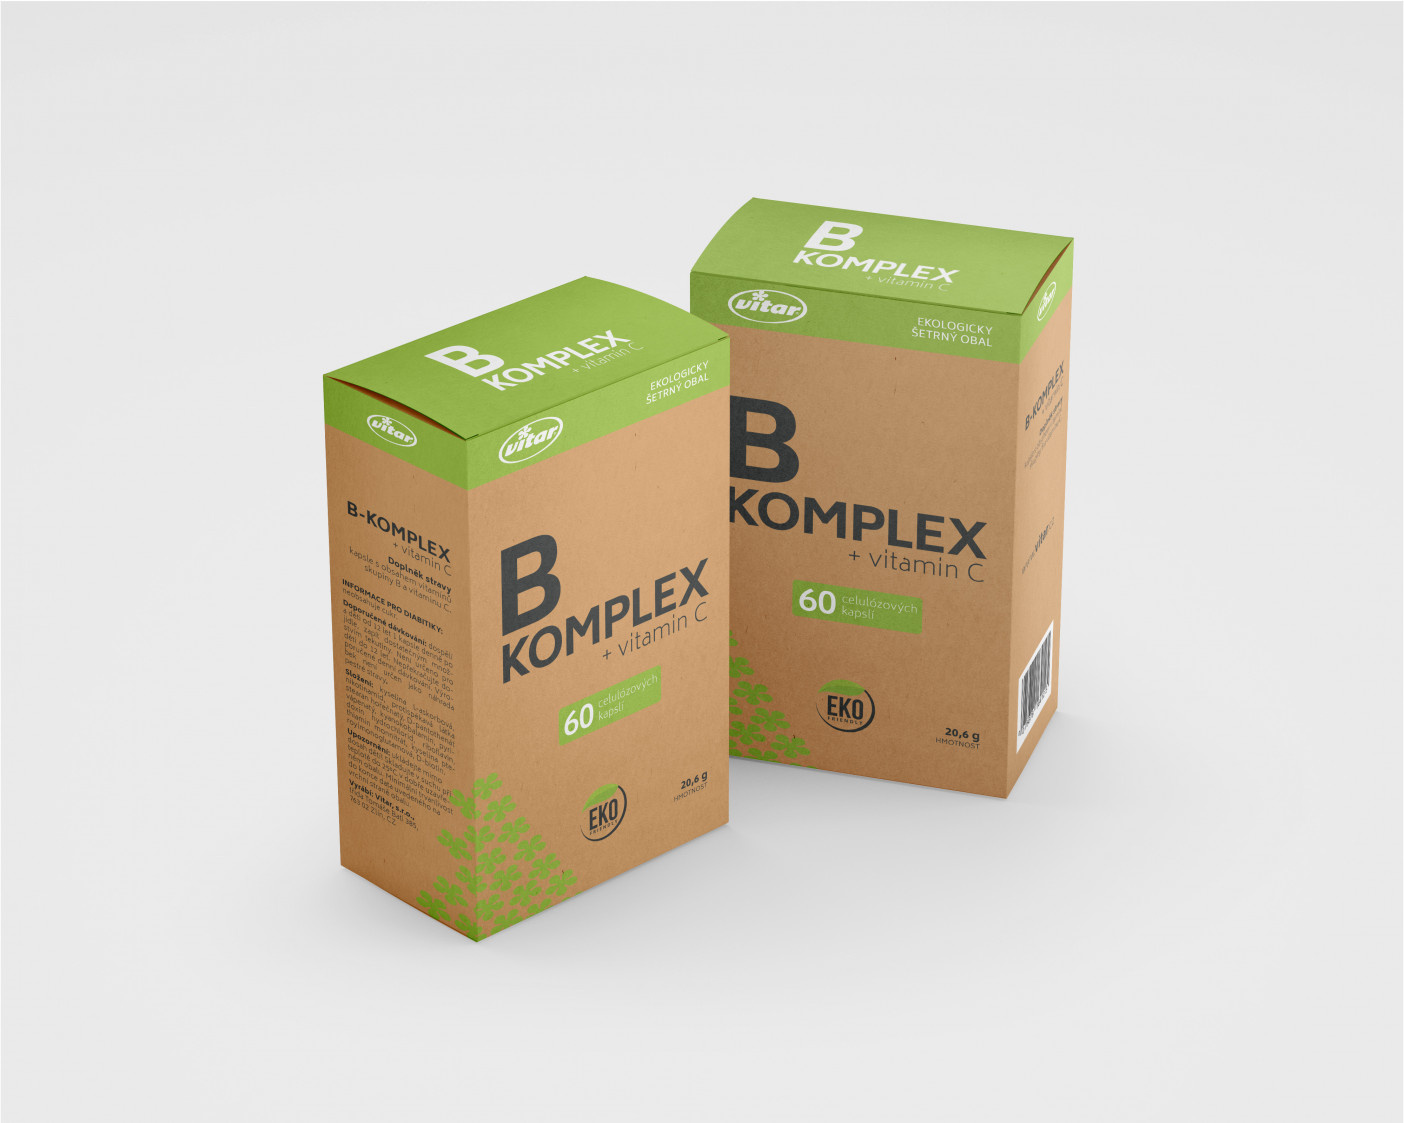 B_KOMPLEX_5